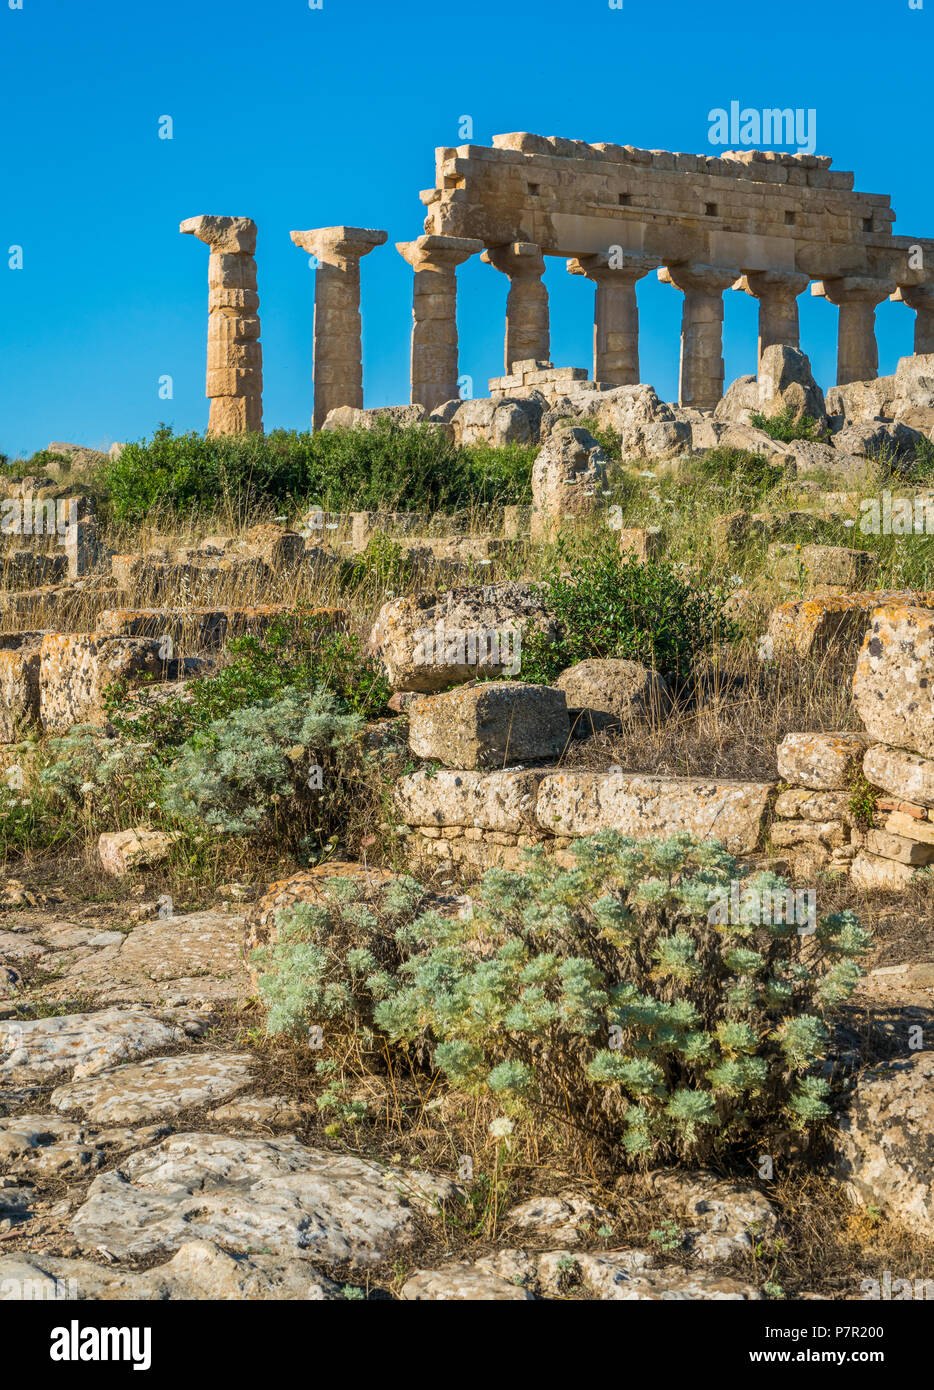 Le rovine di Selinunte, sito archeologico e antica città greca in Sicilia, Italia. Foto Stock